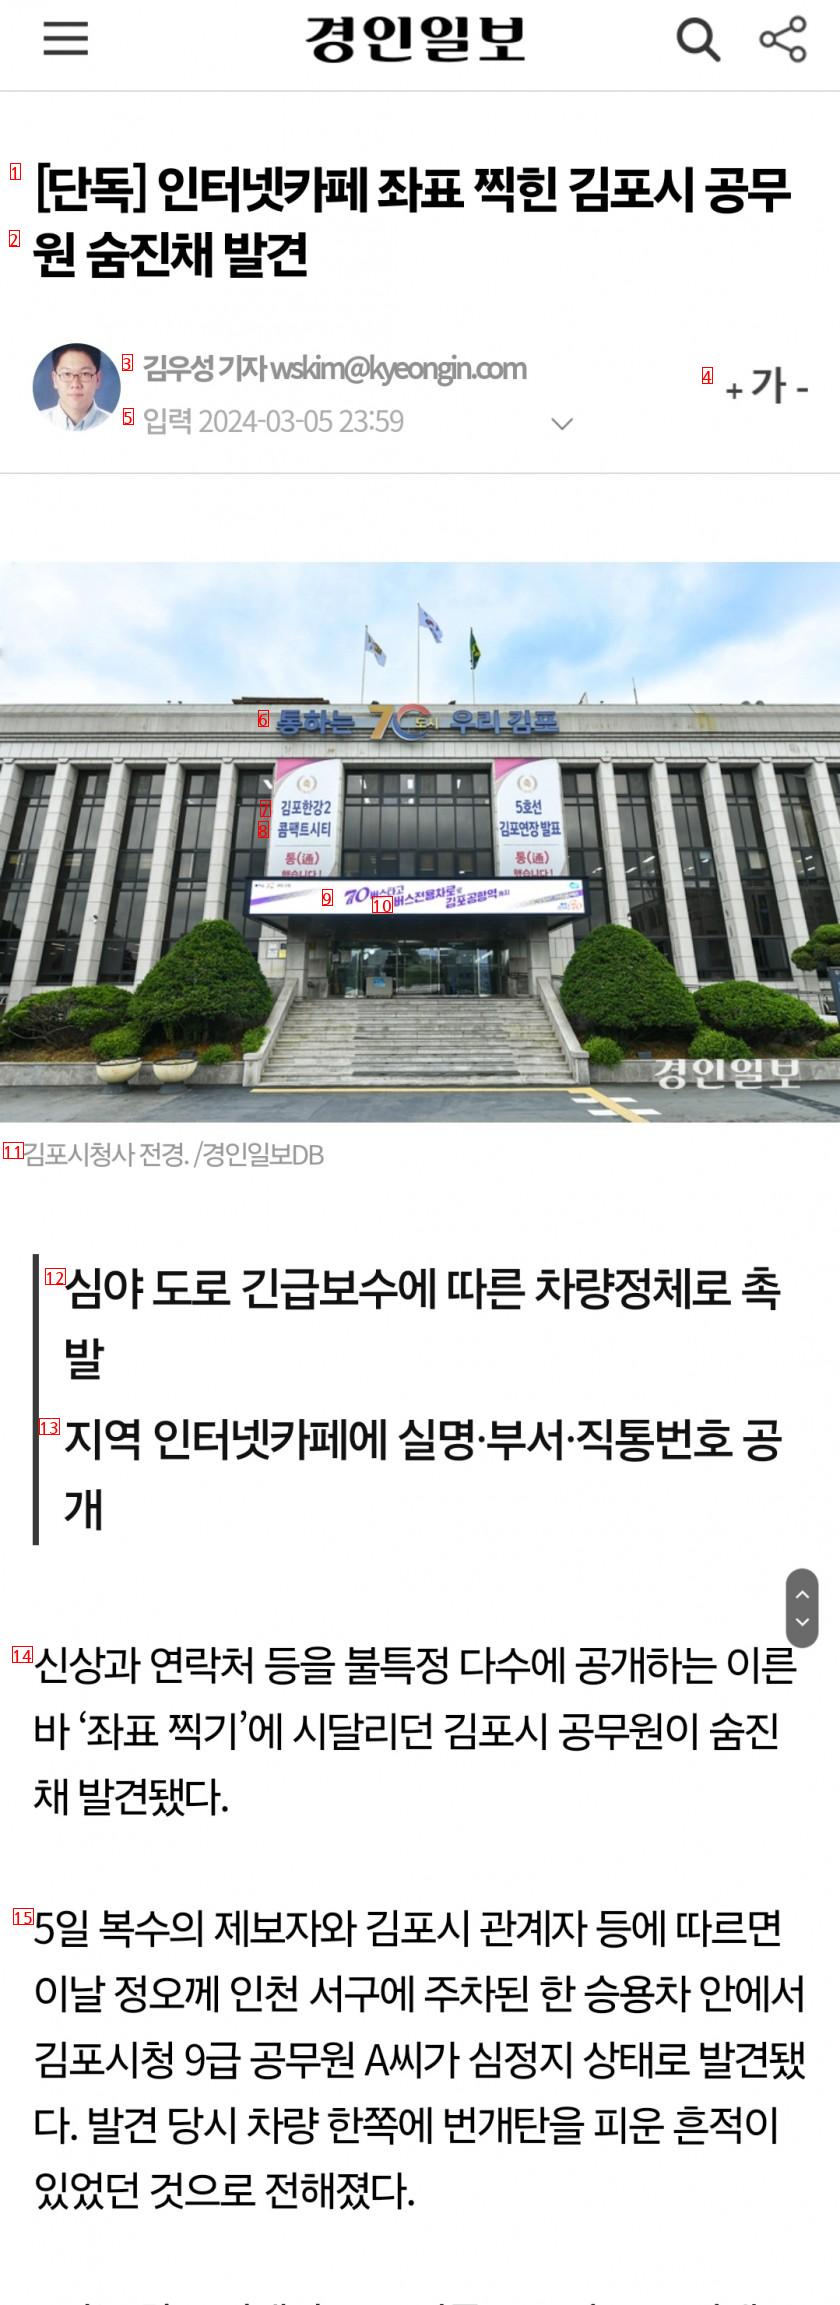 인터넷카페 좌표 찍힌 김포시 공무원 숨진채 발견